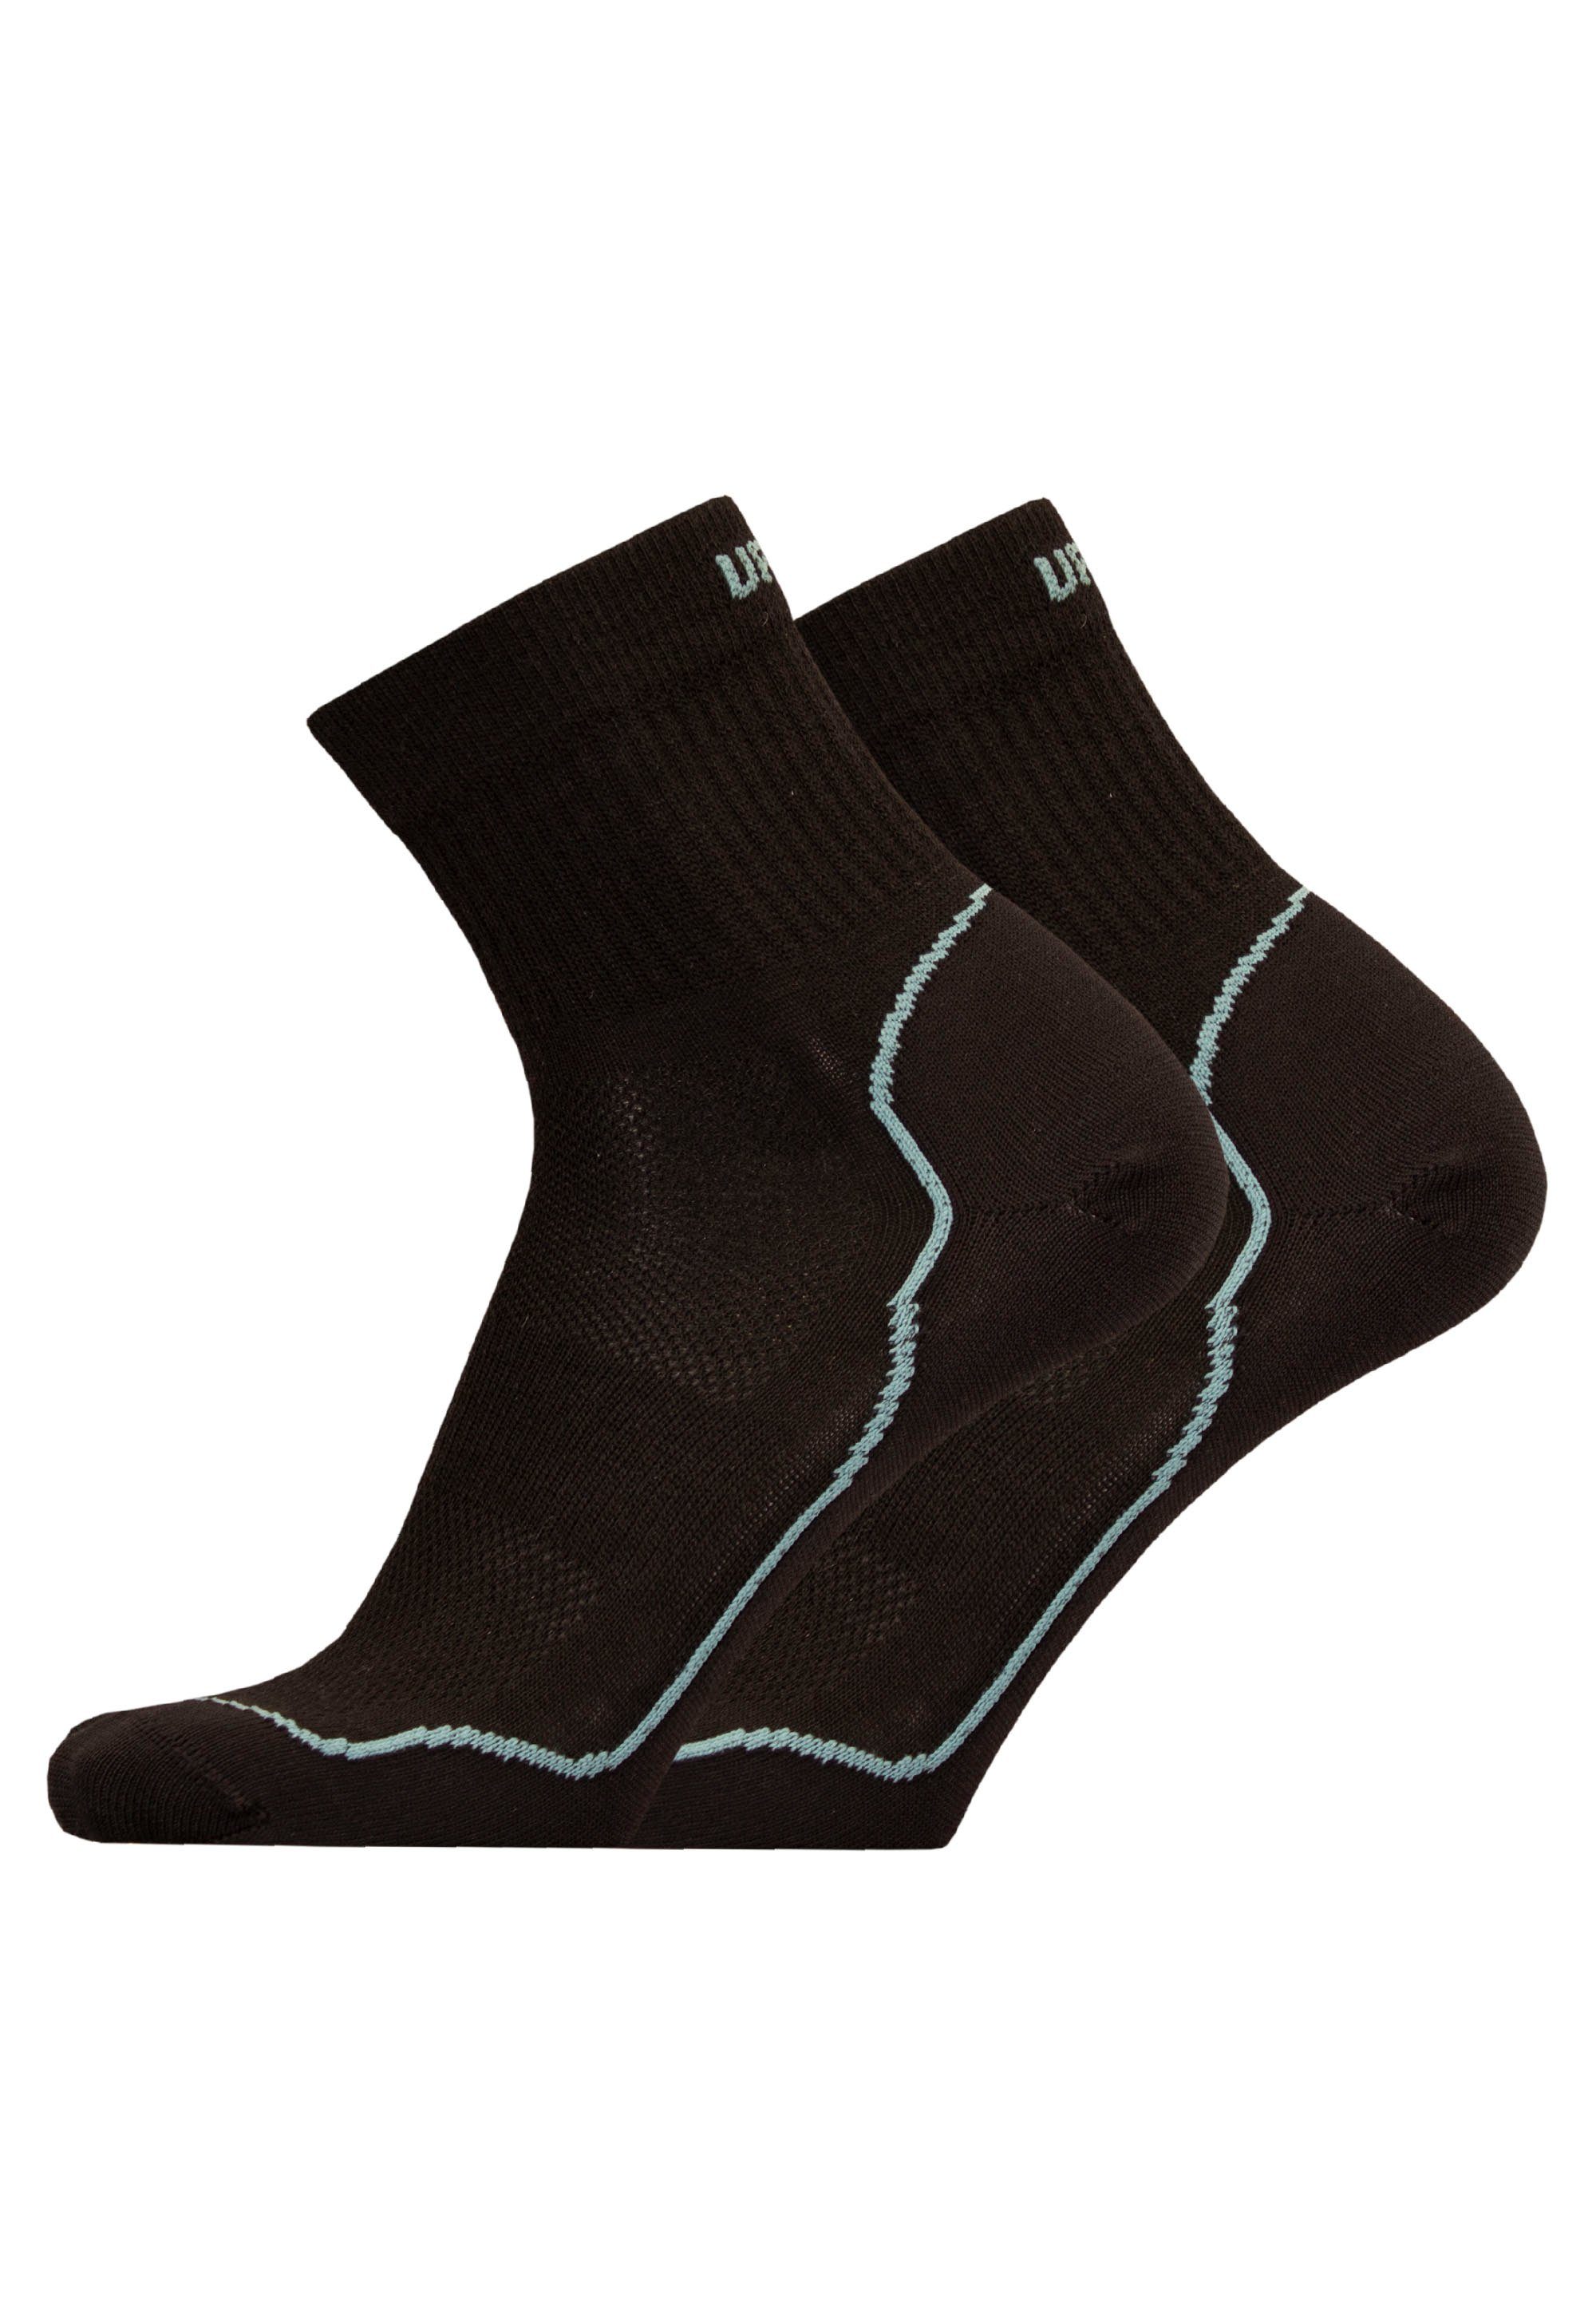 UphillSport Socken (2-Paar) ohne reibende Nähte schwarz-grau